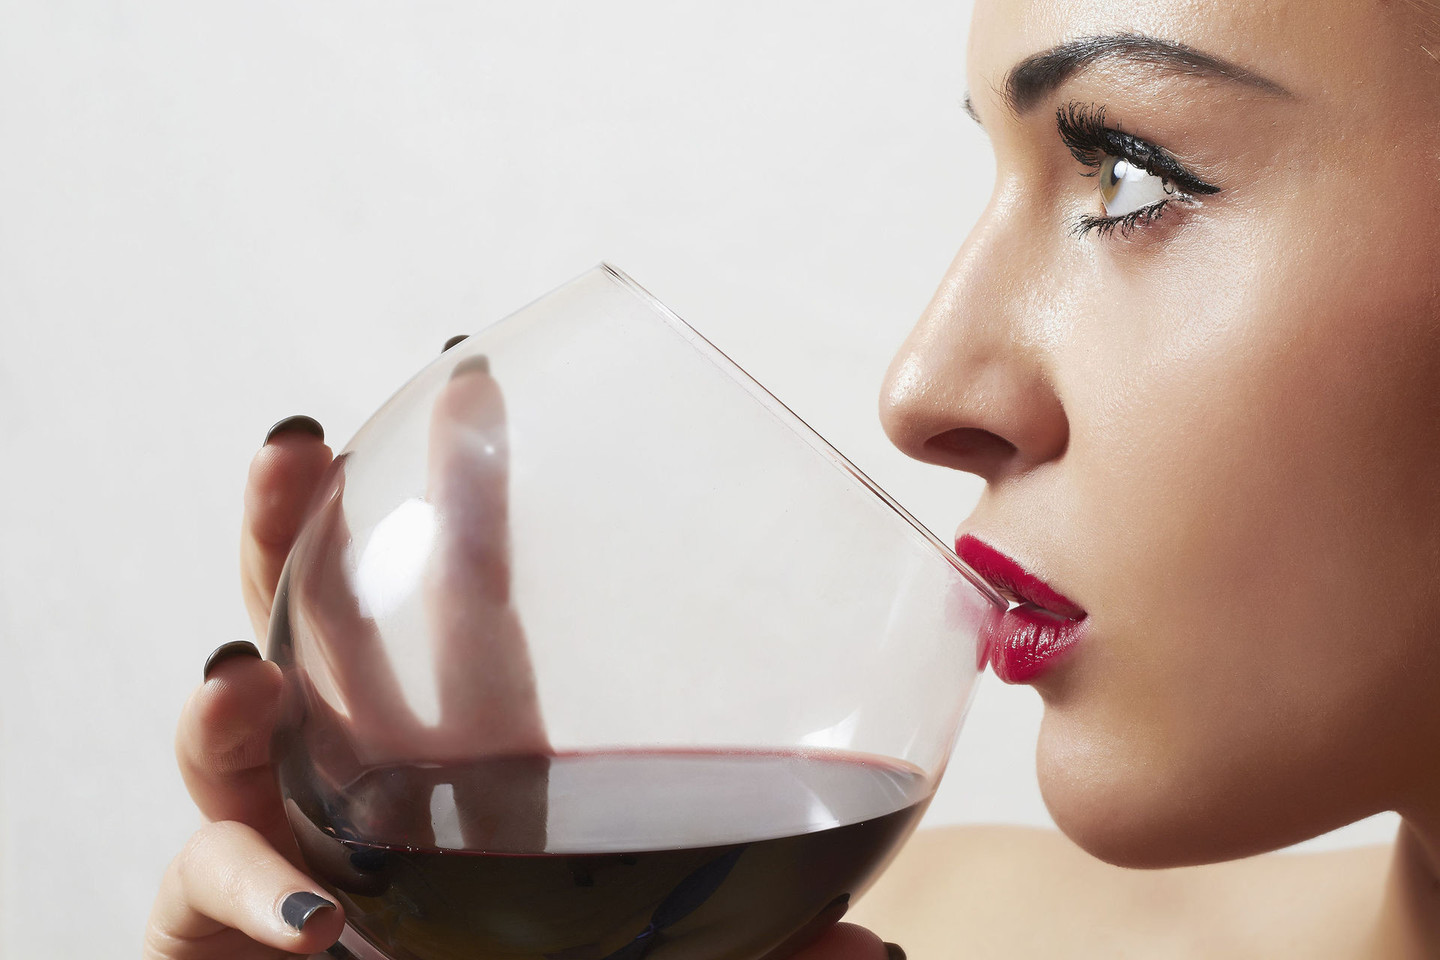 Mada gerti vyną iš didelių taurių gali atsirūgti: taip suvartojama daugiau alkoholio, gaunama daugiau kalorijų.<br>123rf nuotr.